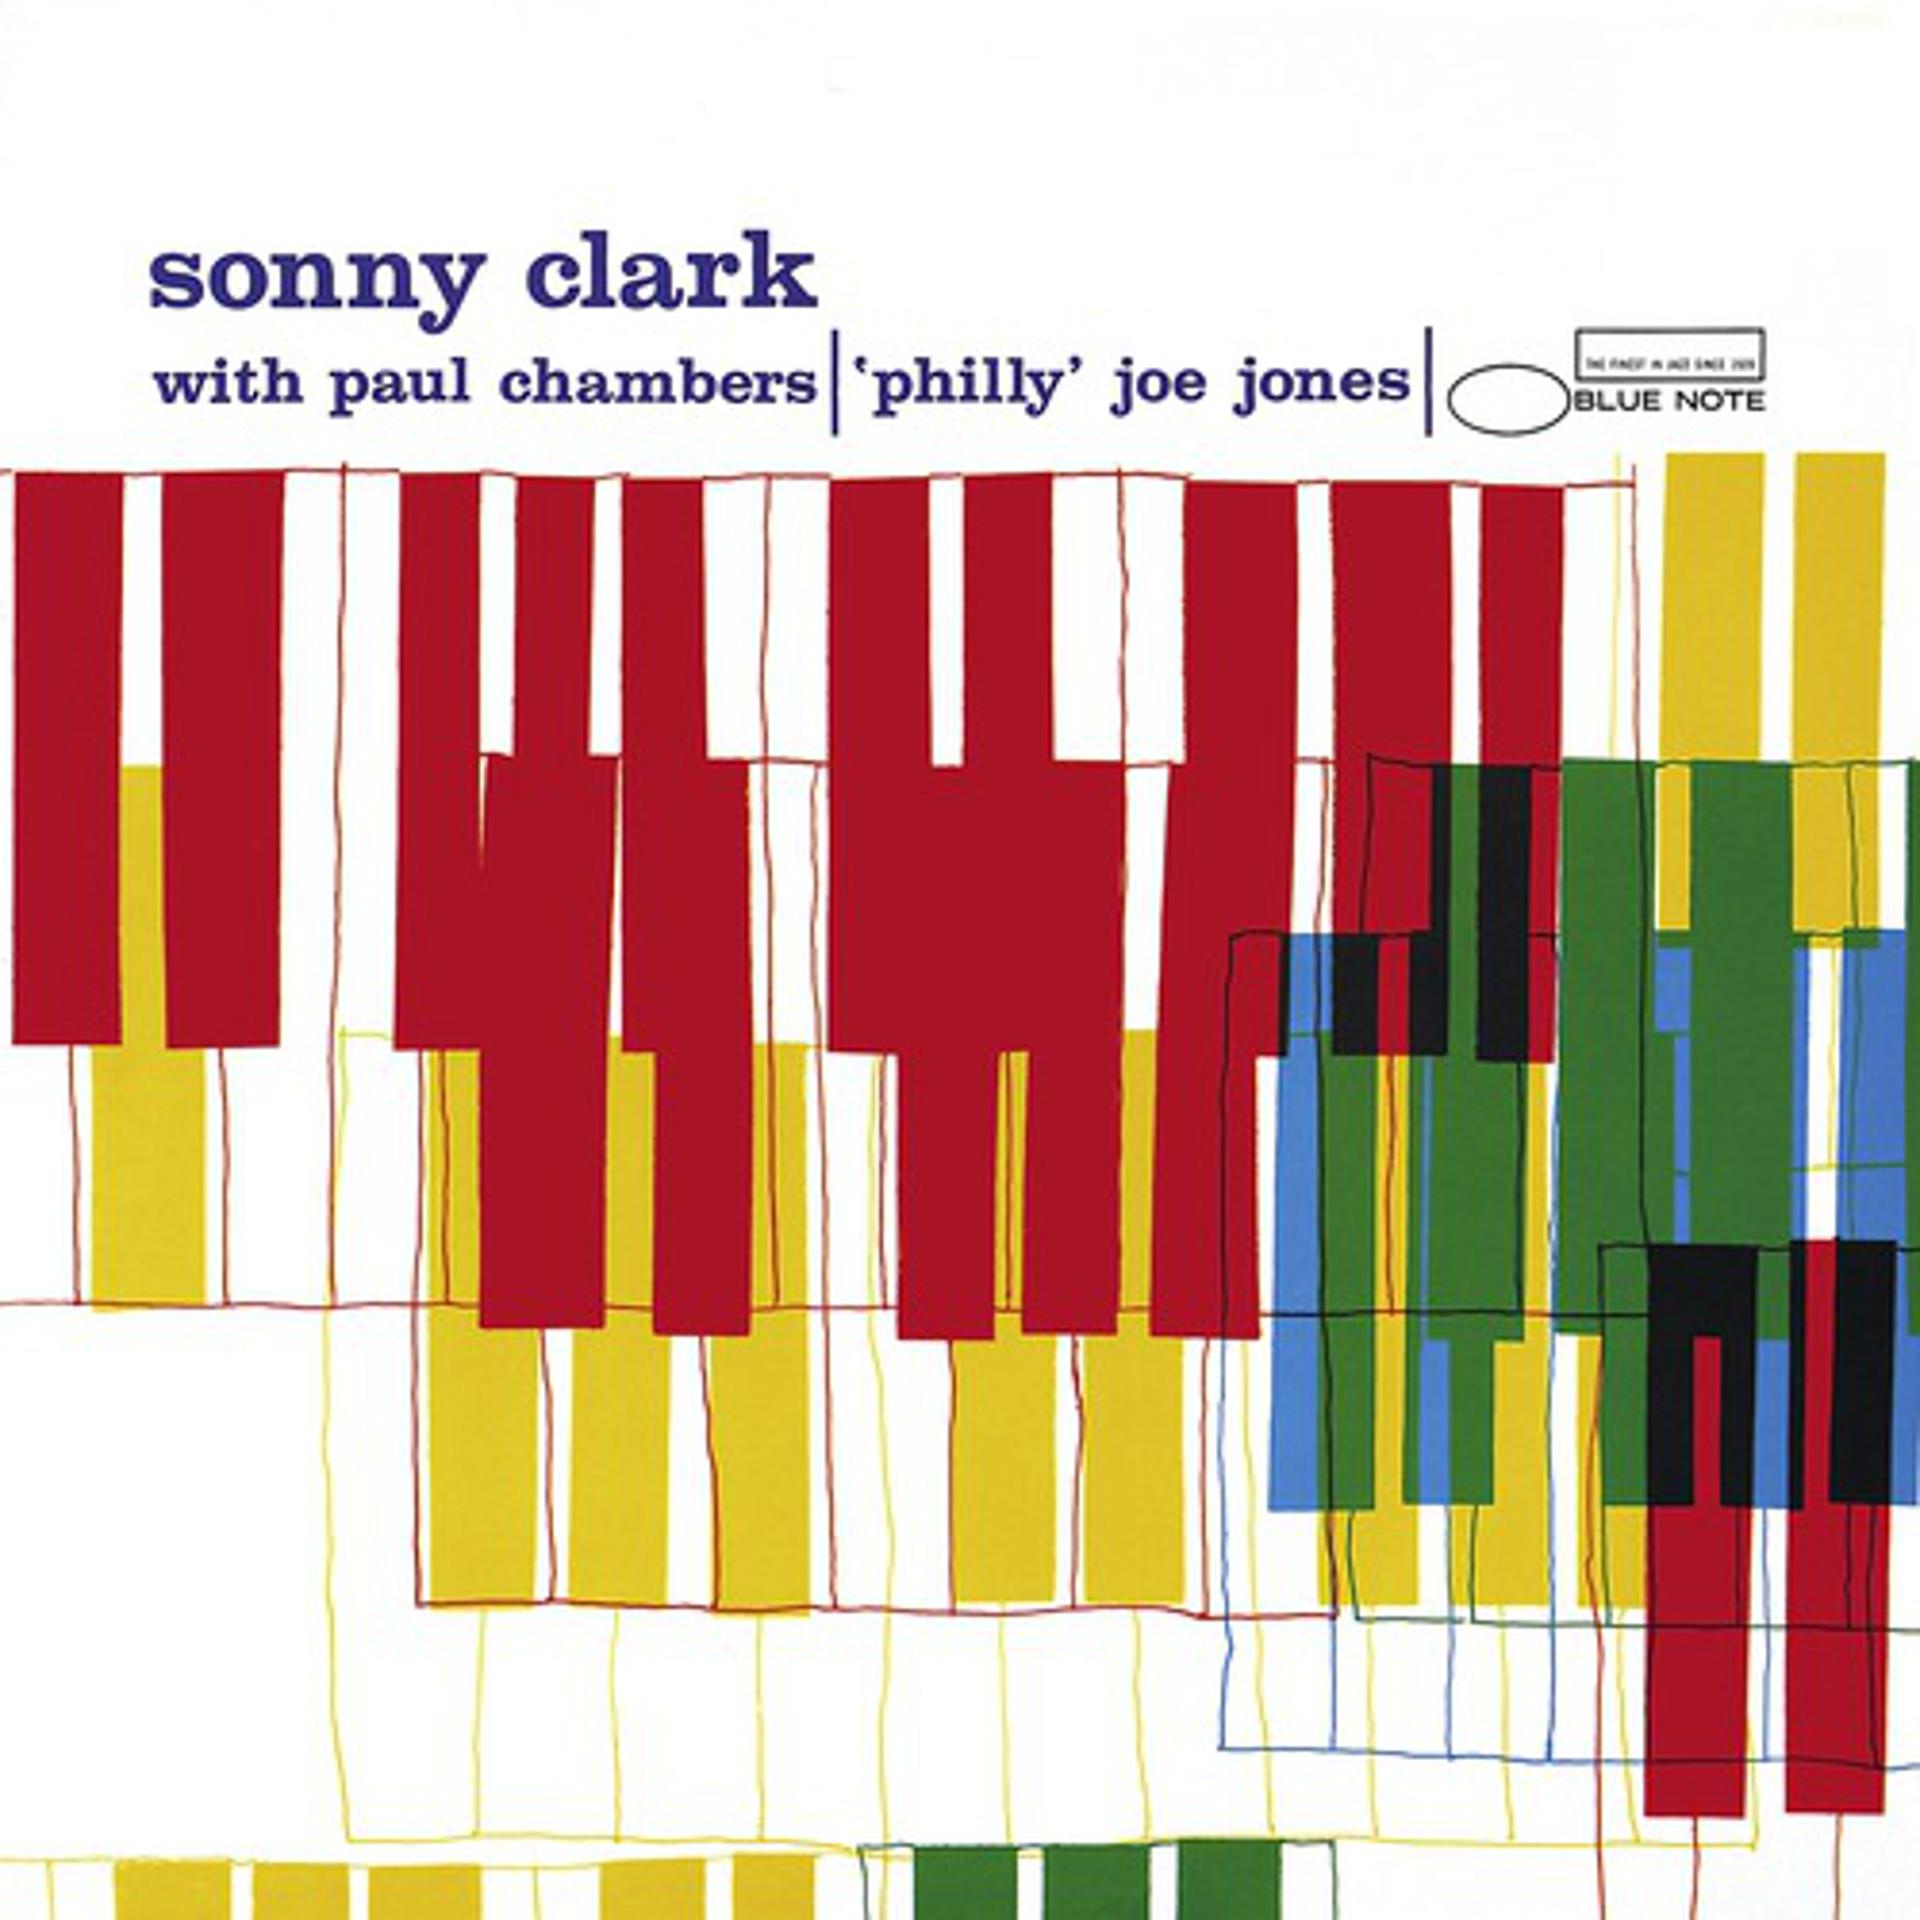 Постер альбома Sonny Clark Trio